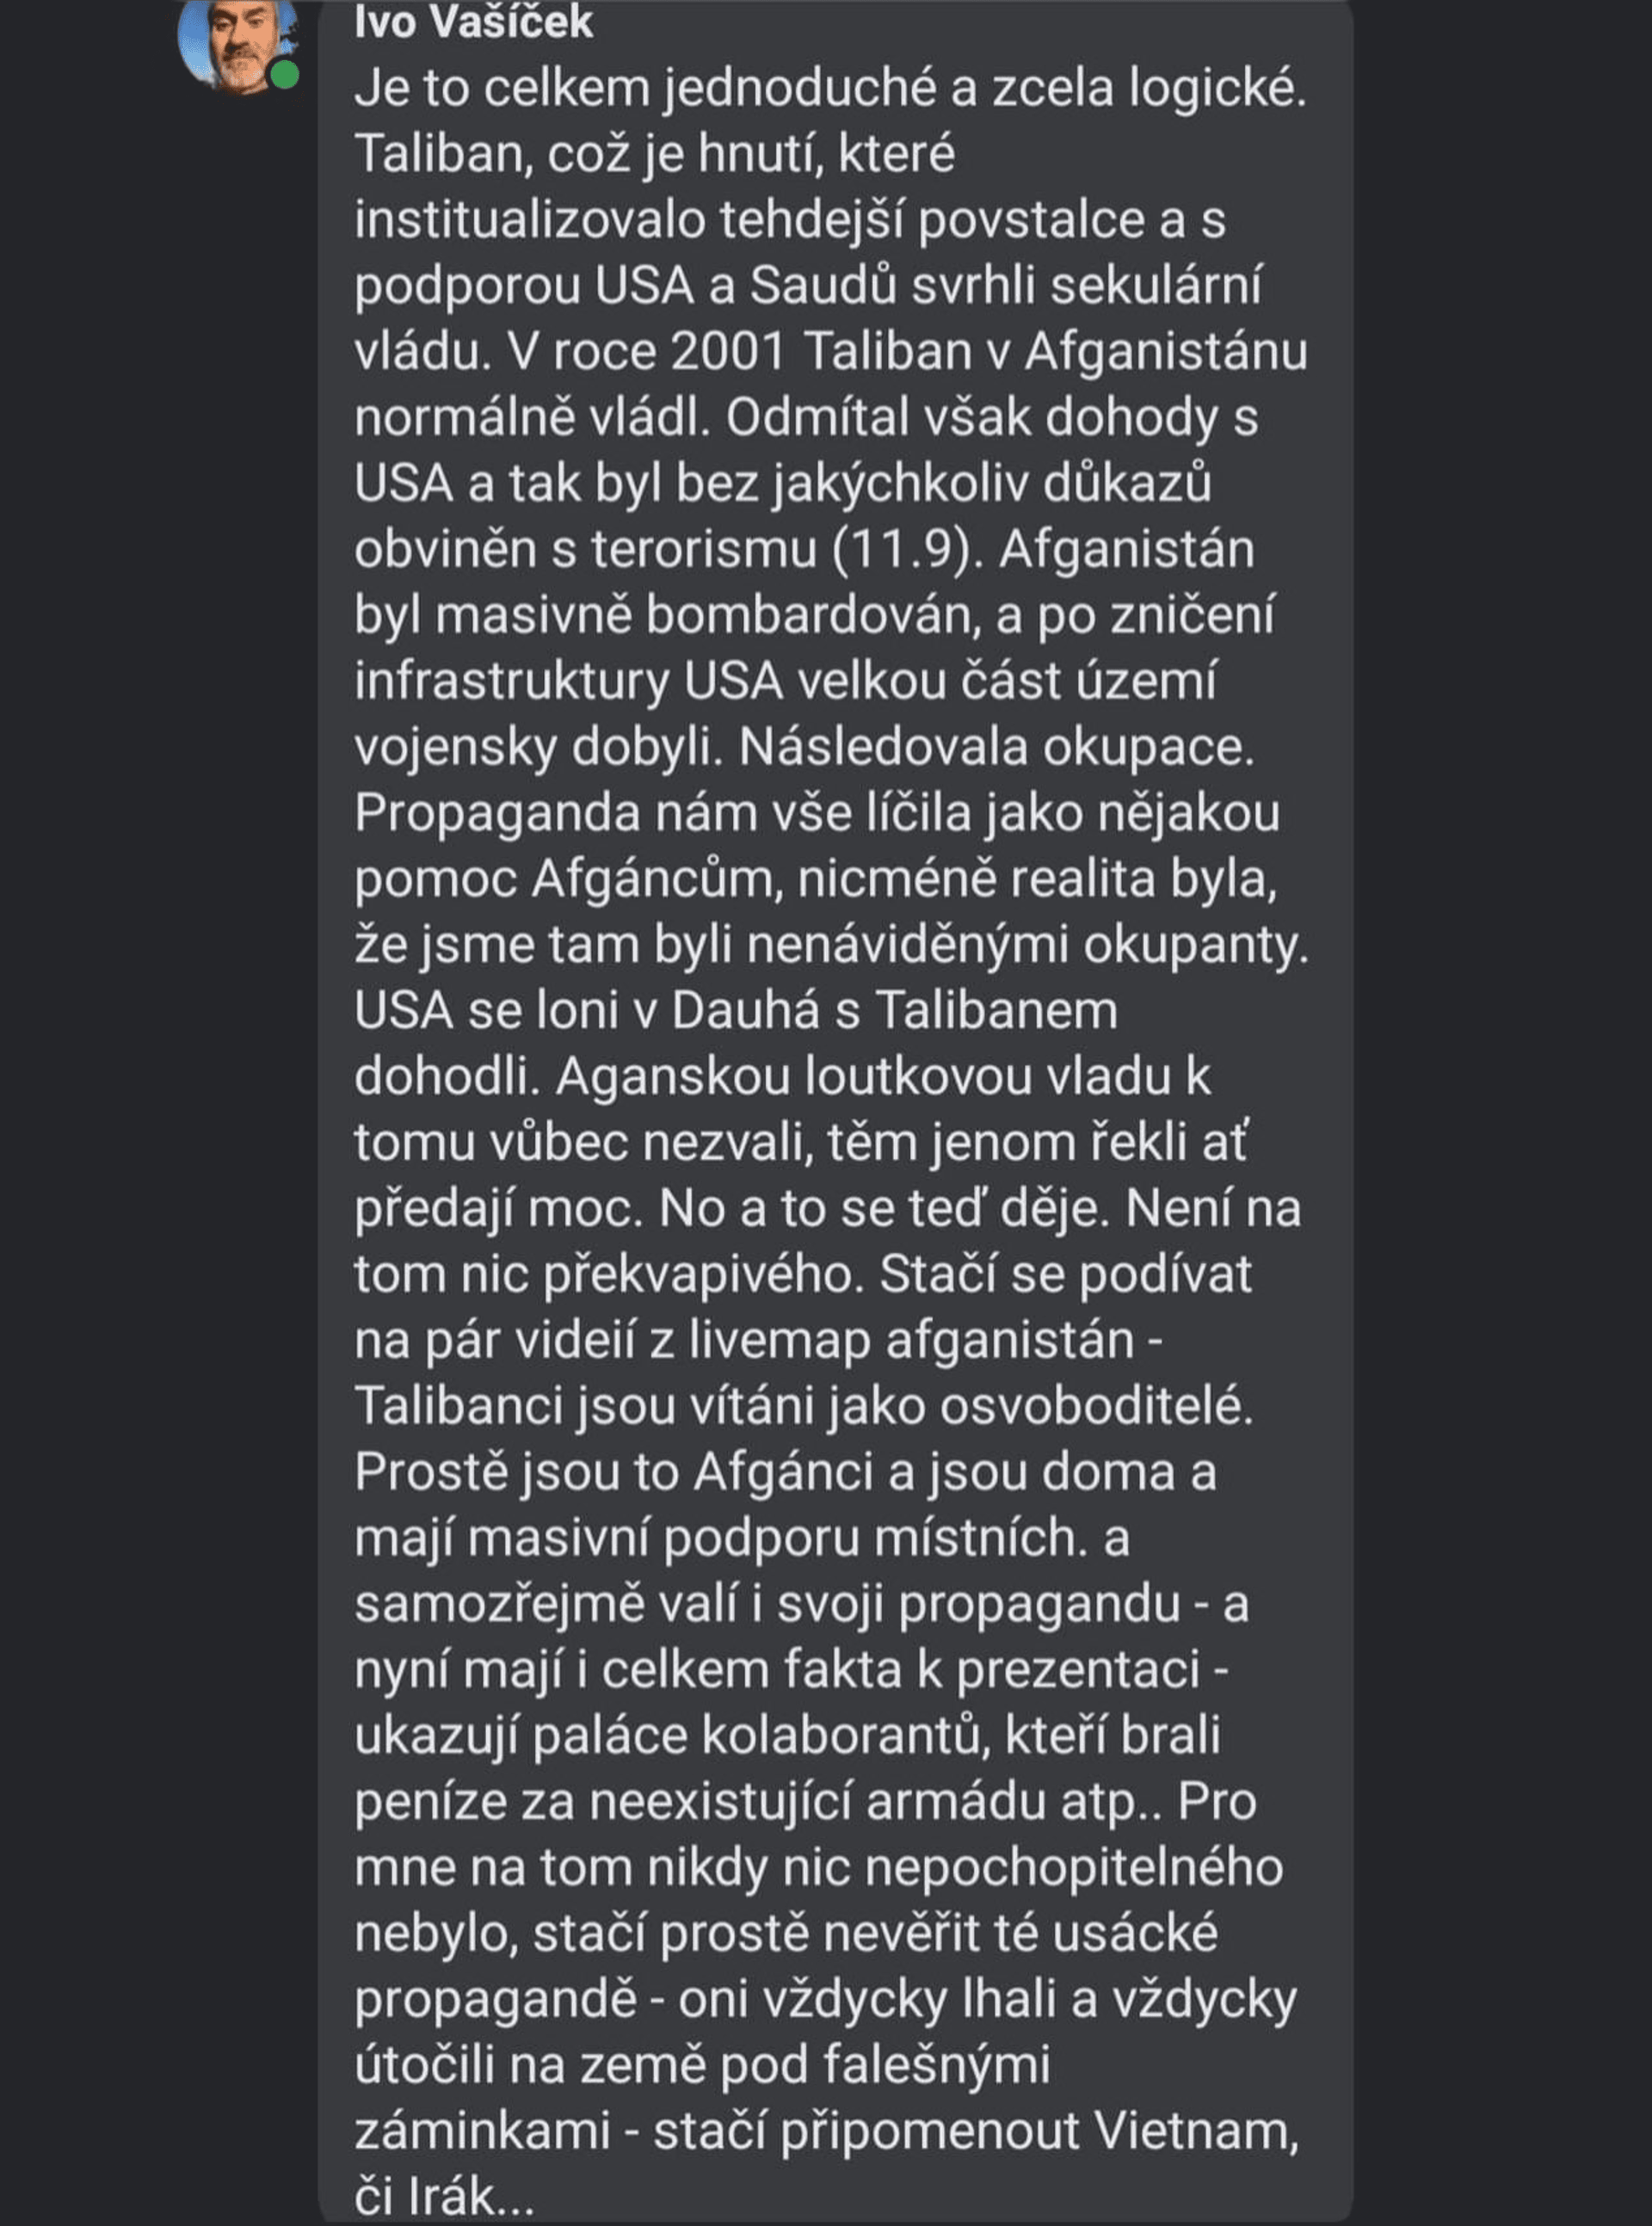 Příspěvek Ivo Vašíčka. Zdroj: Facebook Ivo Vašíček